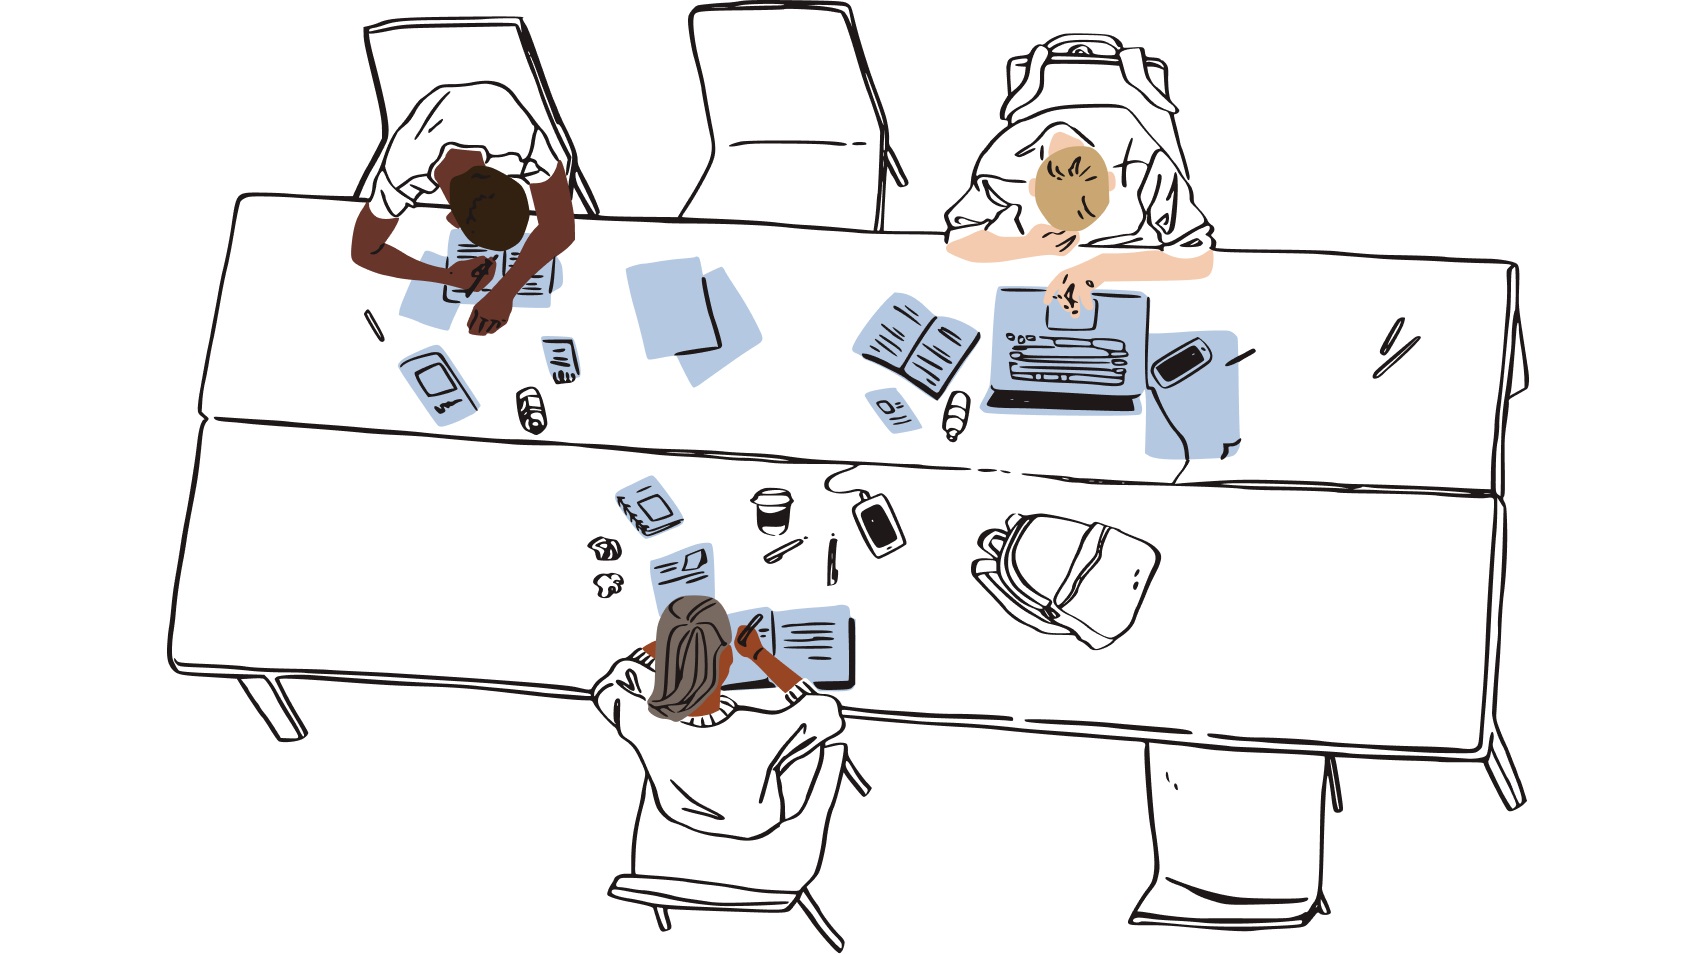 Des personnes travaillent sur un bureau encombré avec plusieurs appareils et fichiers